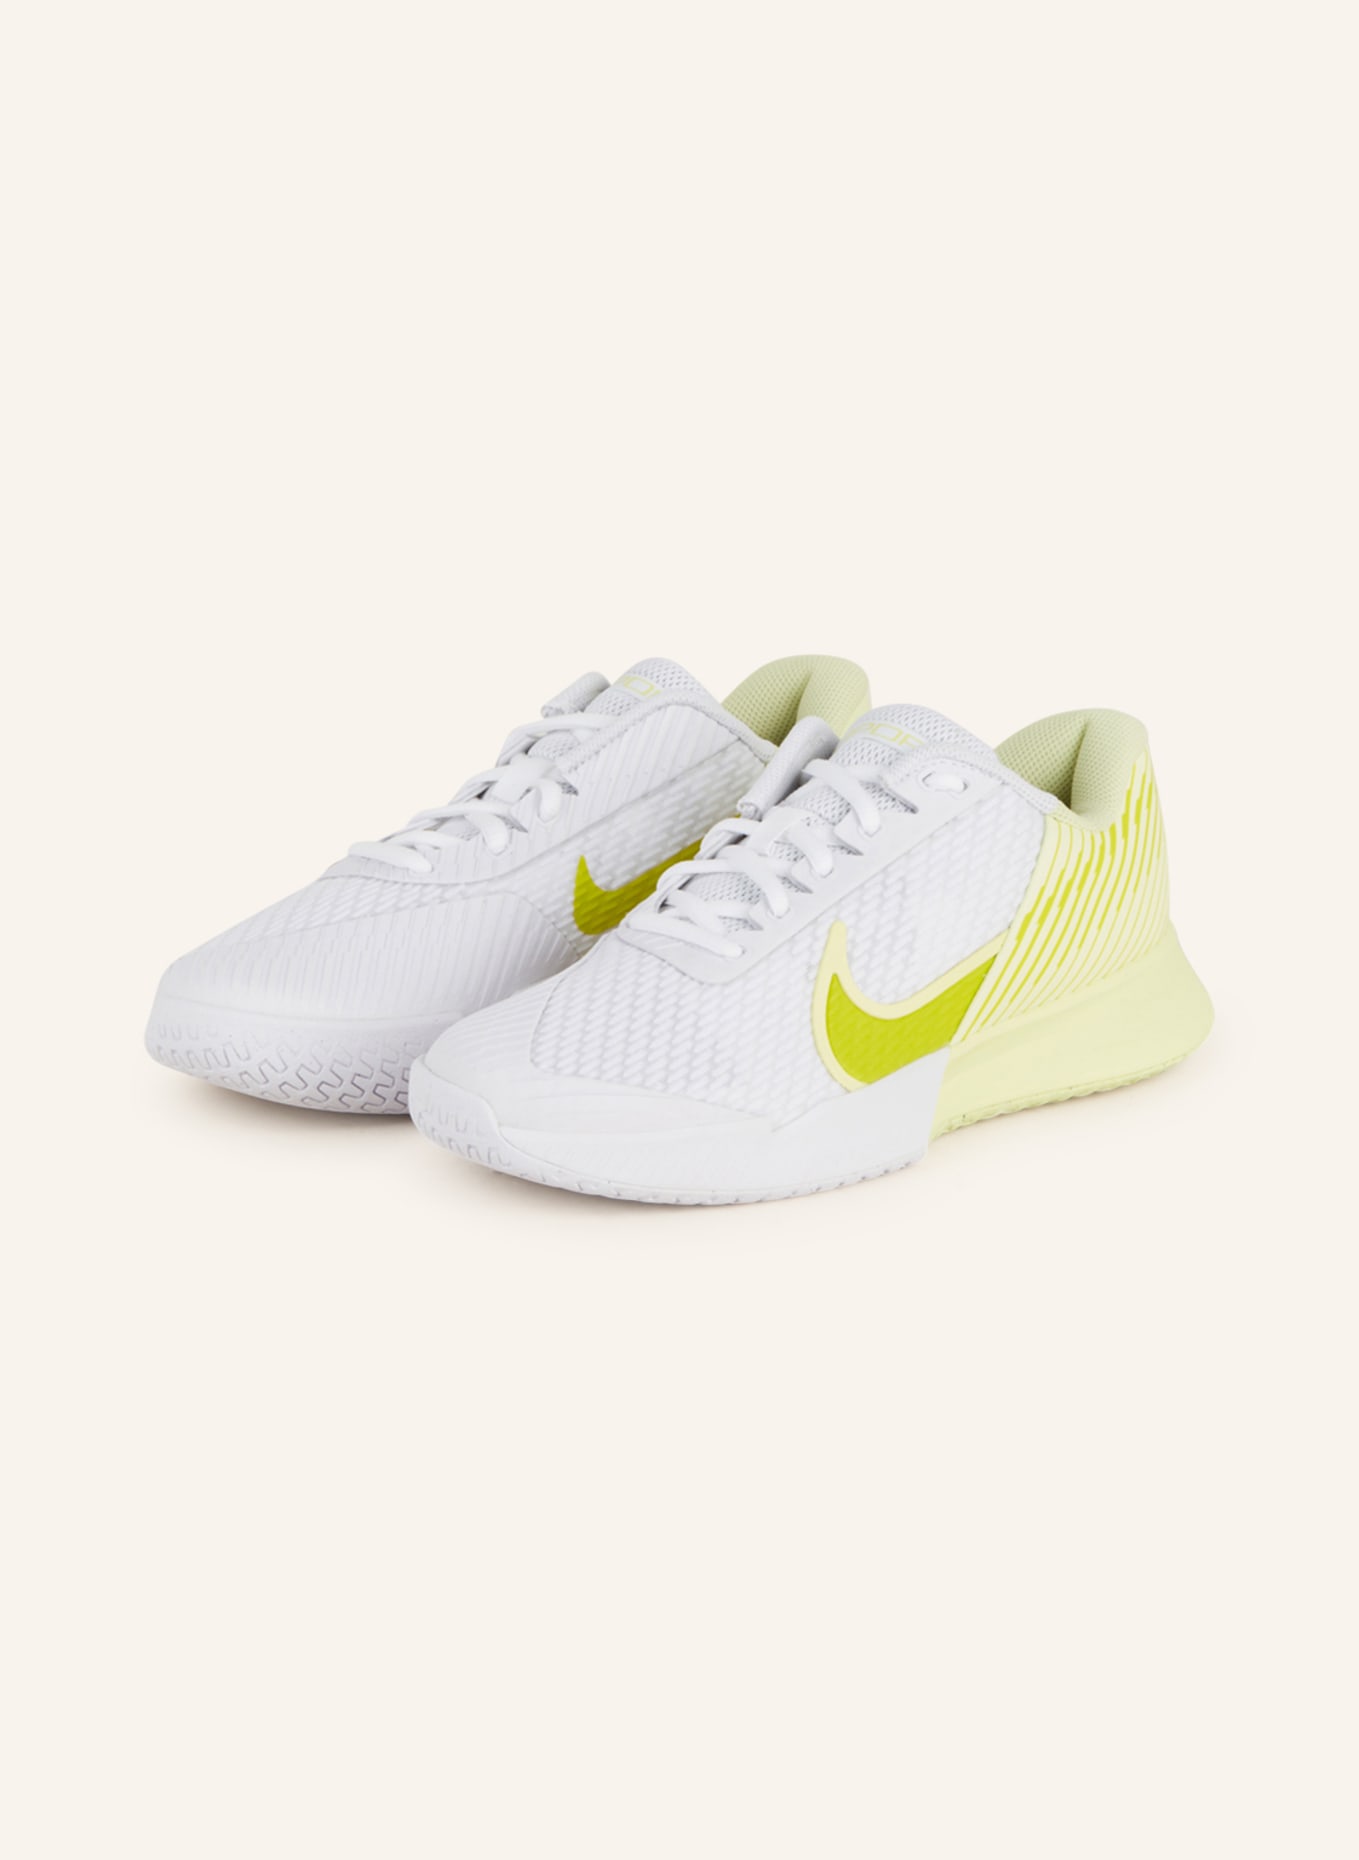 Nike Tennisschuhe COURT AIR ZOOM VAPOR PRO 2 in weiss/ gelb